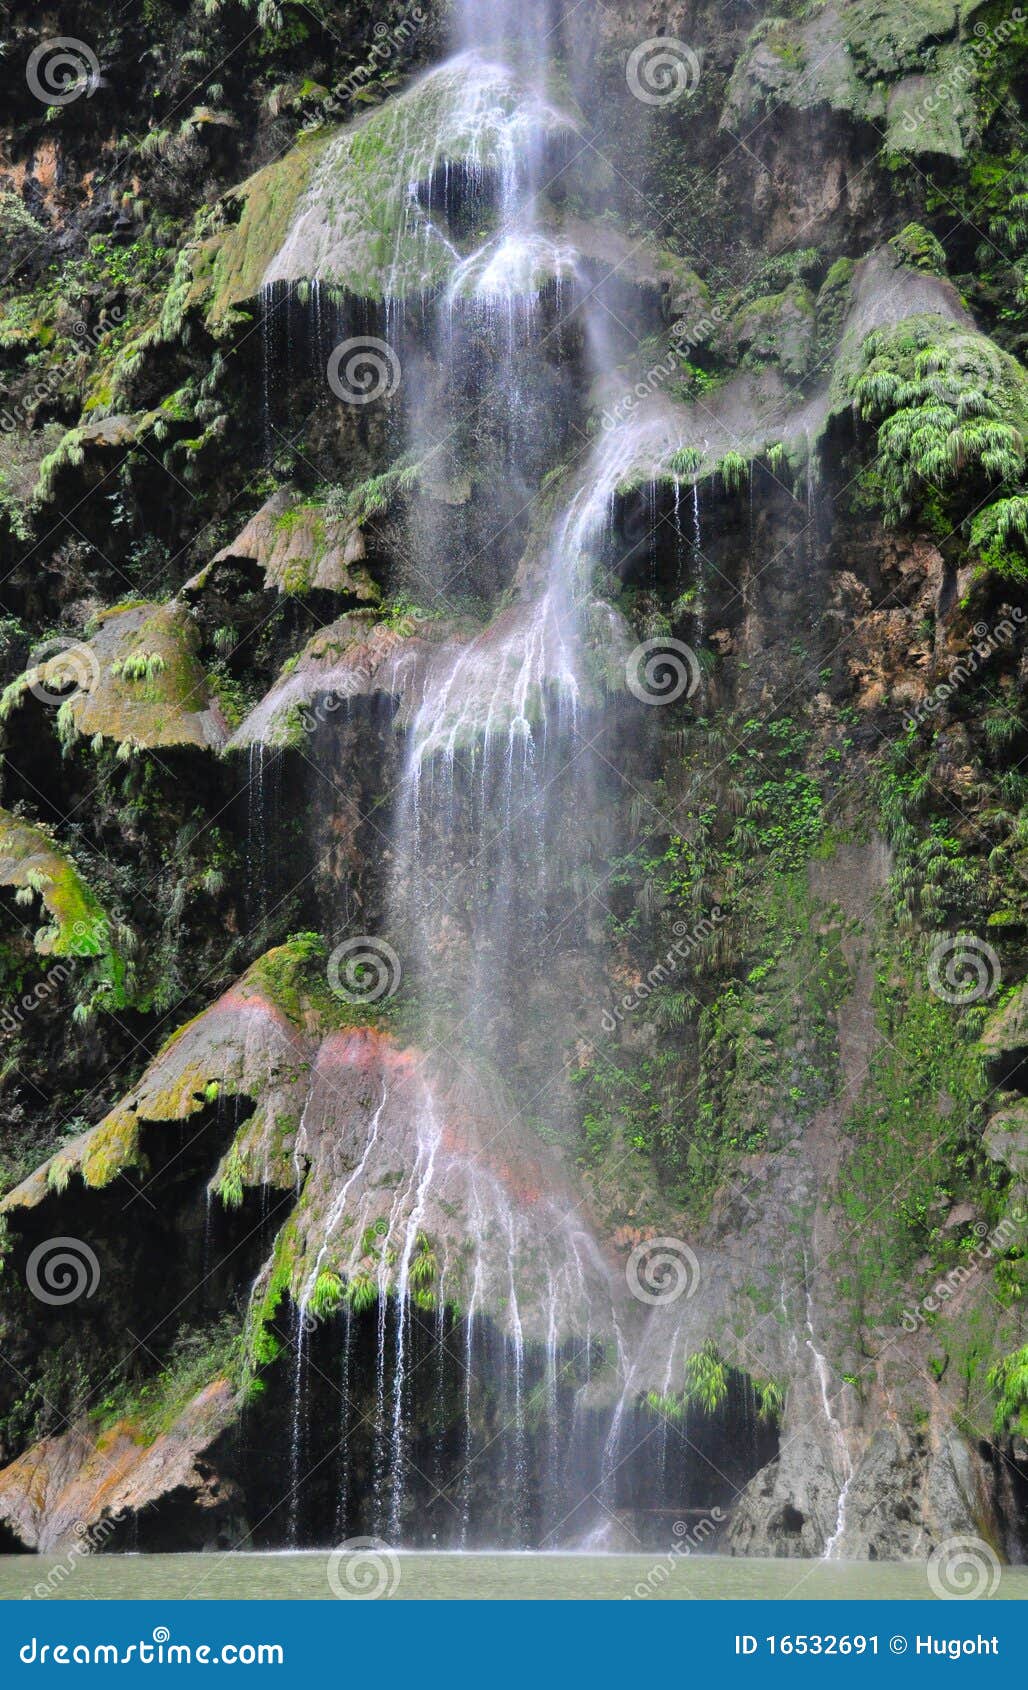 sumidero canyon waterfall, mexico